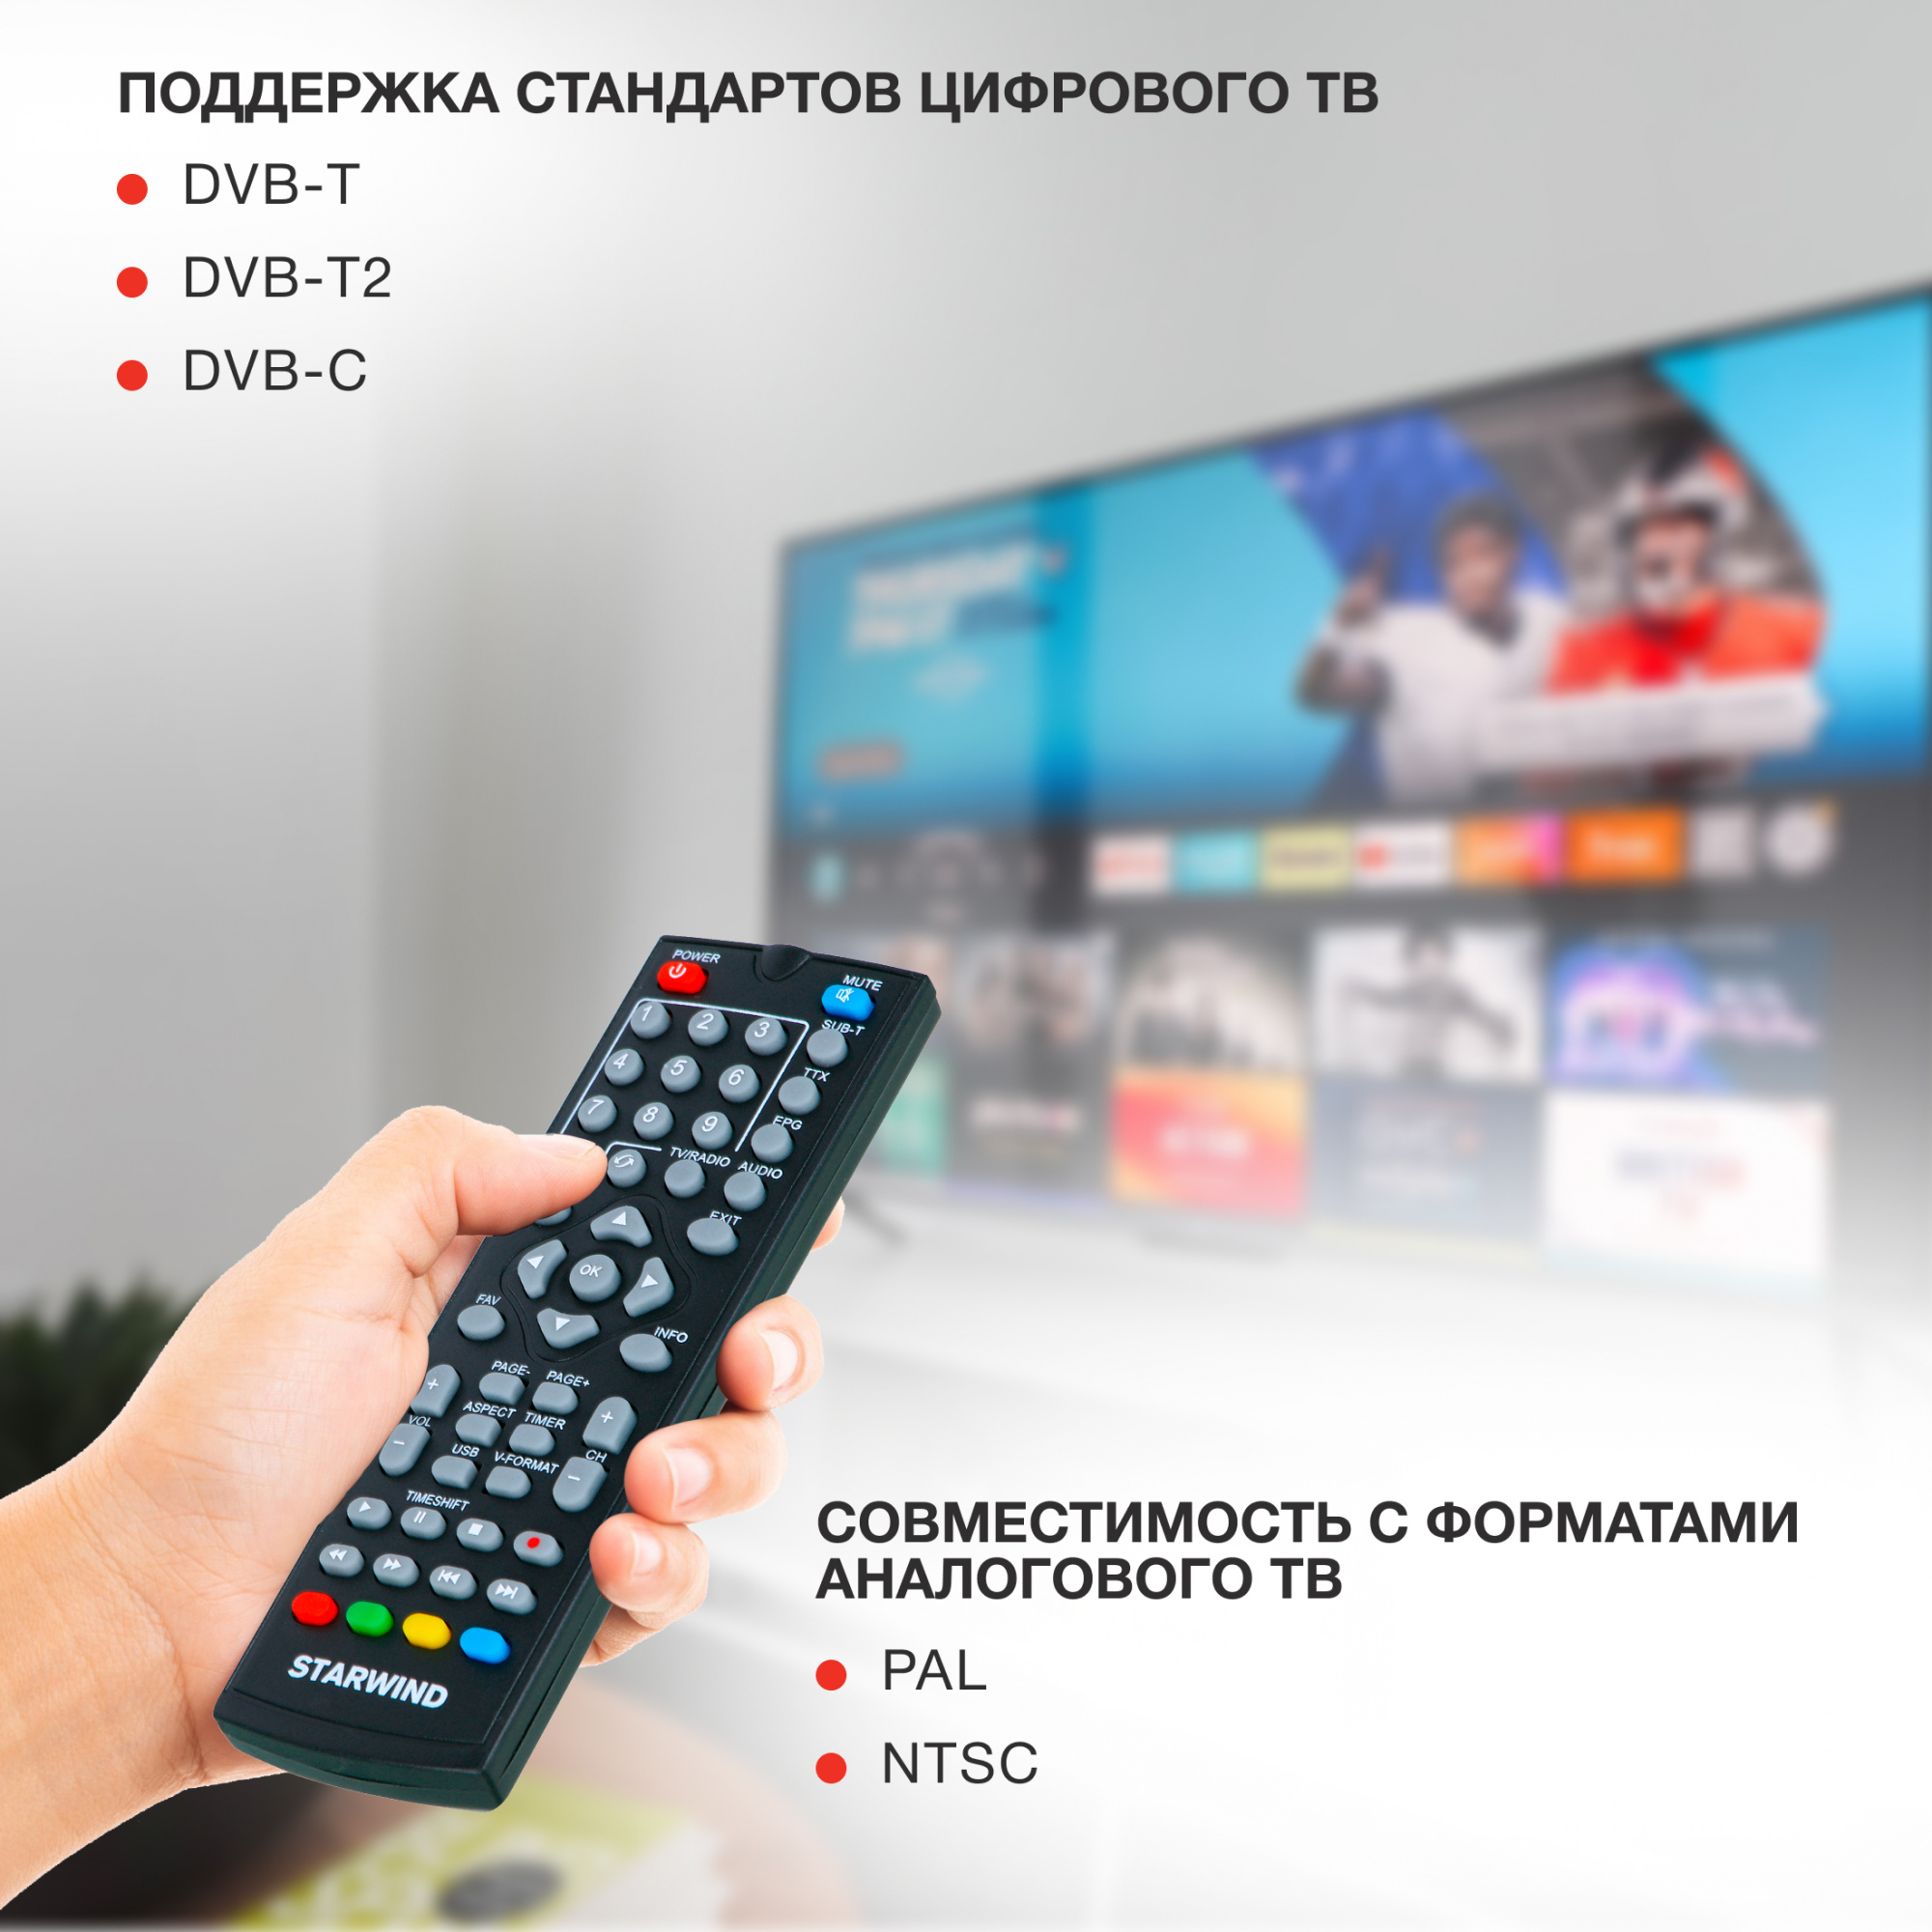 Антенны комнатные для ТВ, DVB-T, DVB-T2